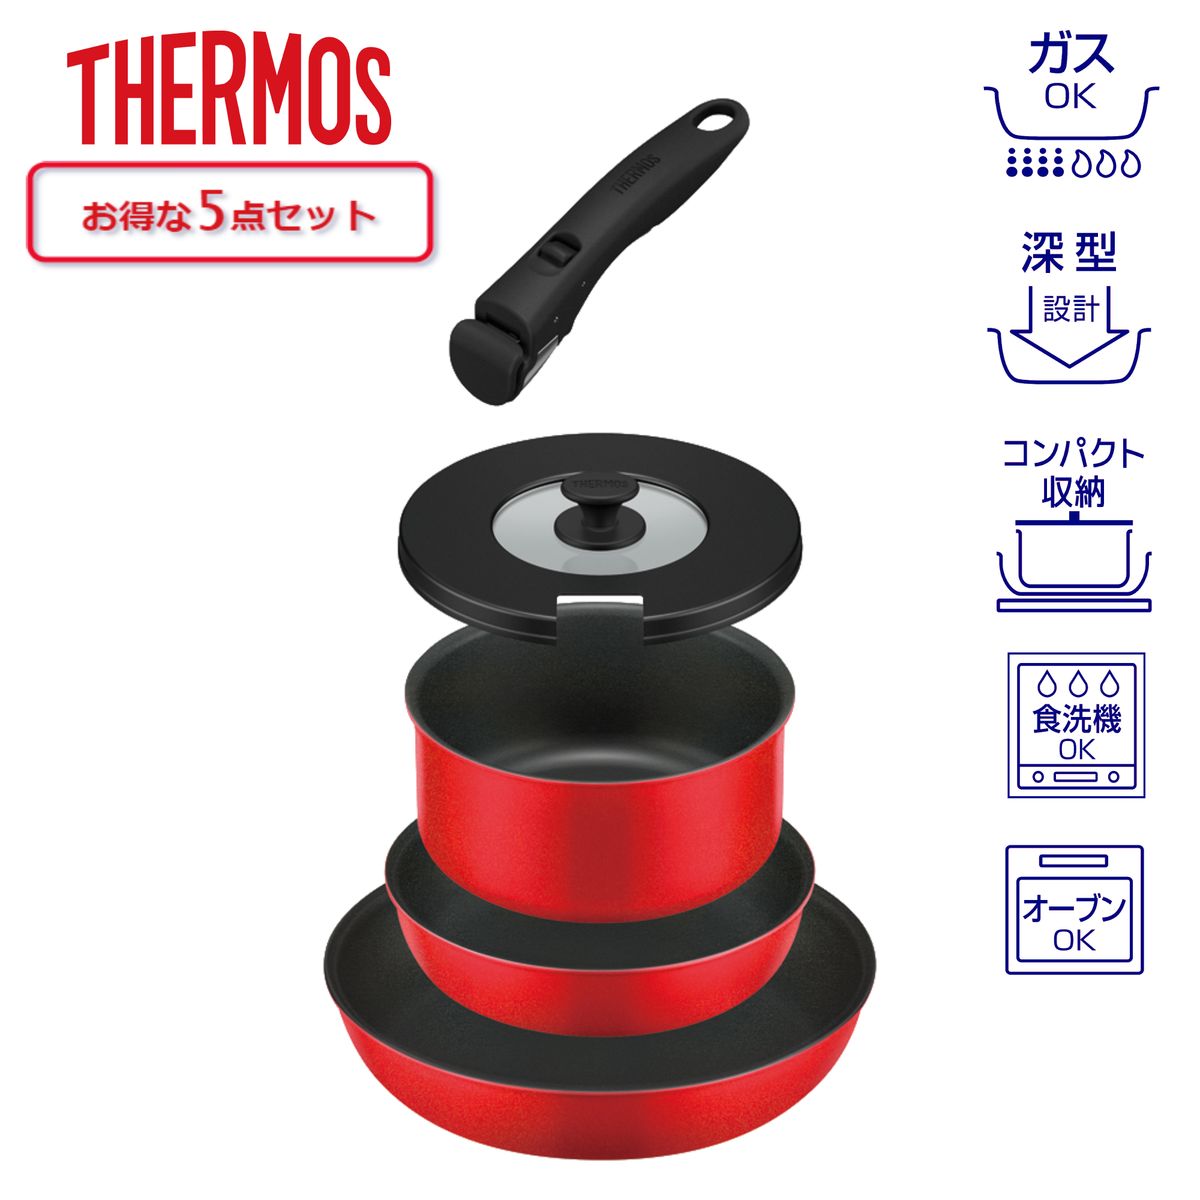 THERMOS 取っ手のとれるフライパン5点セット 蓋 付 着脱式取っ手 ブライトレッド ガス火専用 食洗器対応